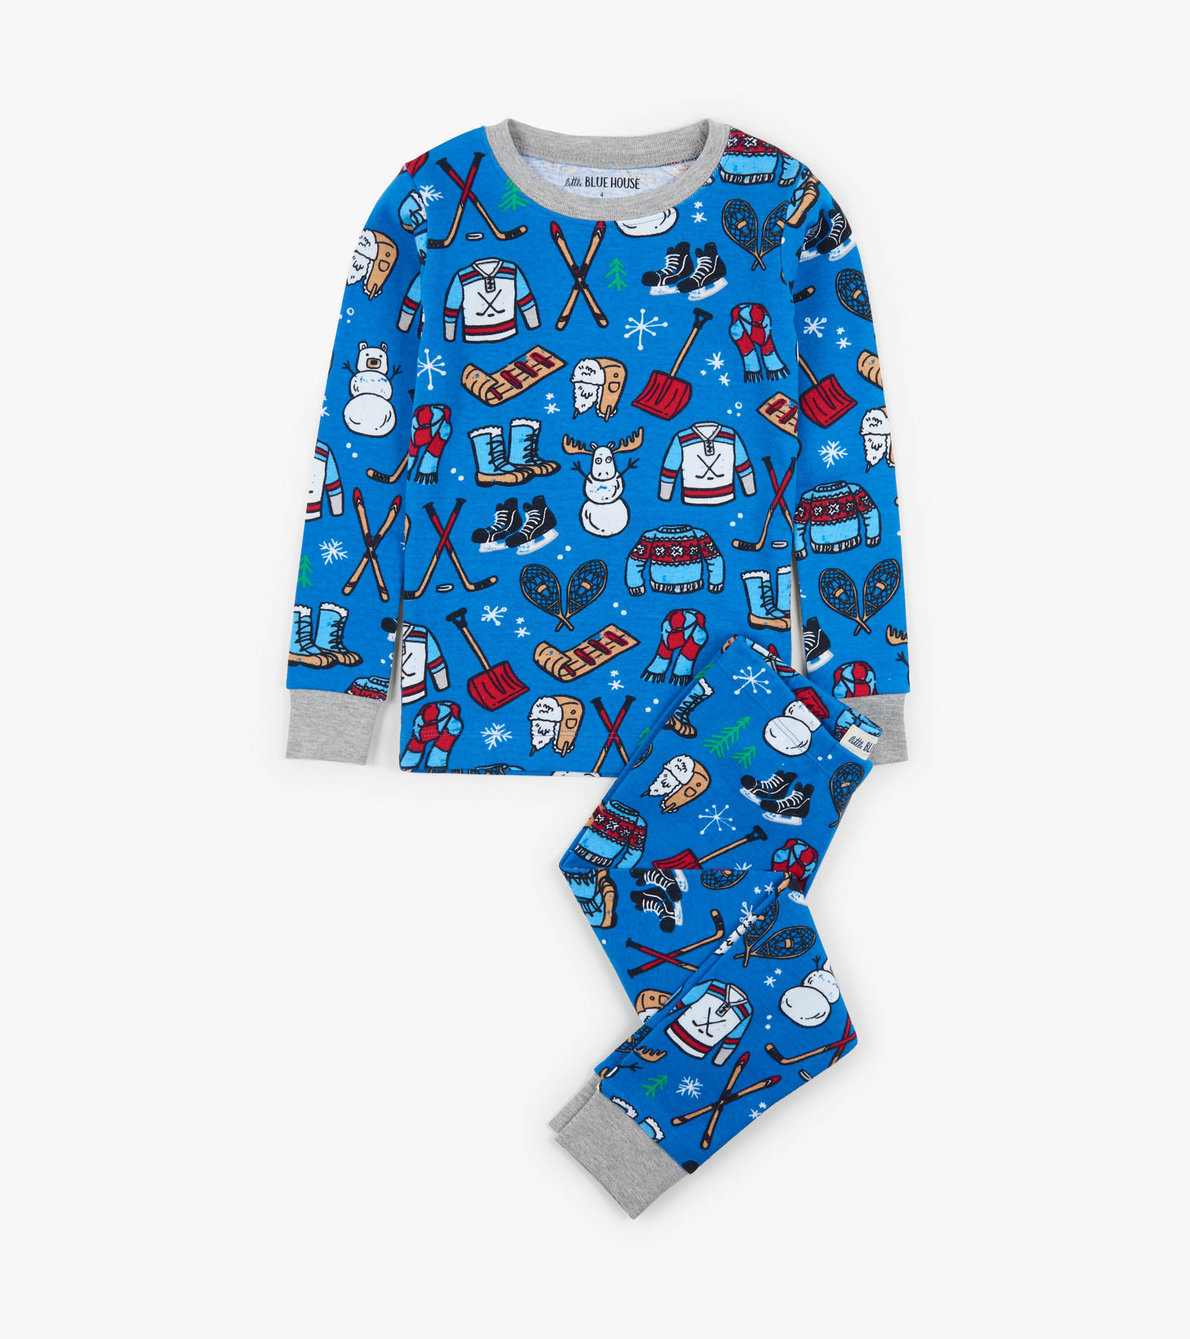 Agrandir l'image de Pyjama pour enfant – Traditions hivernales bleu marine